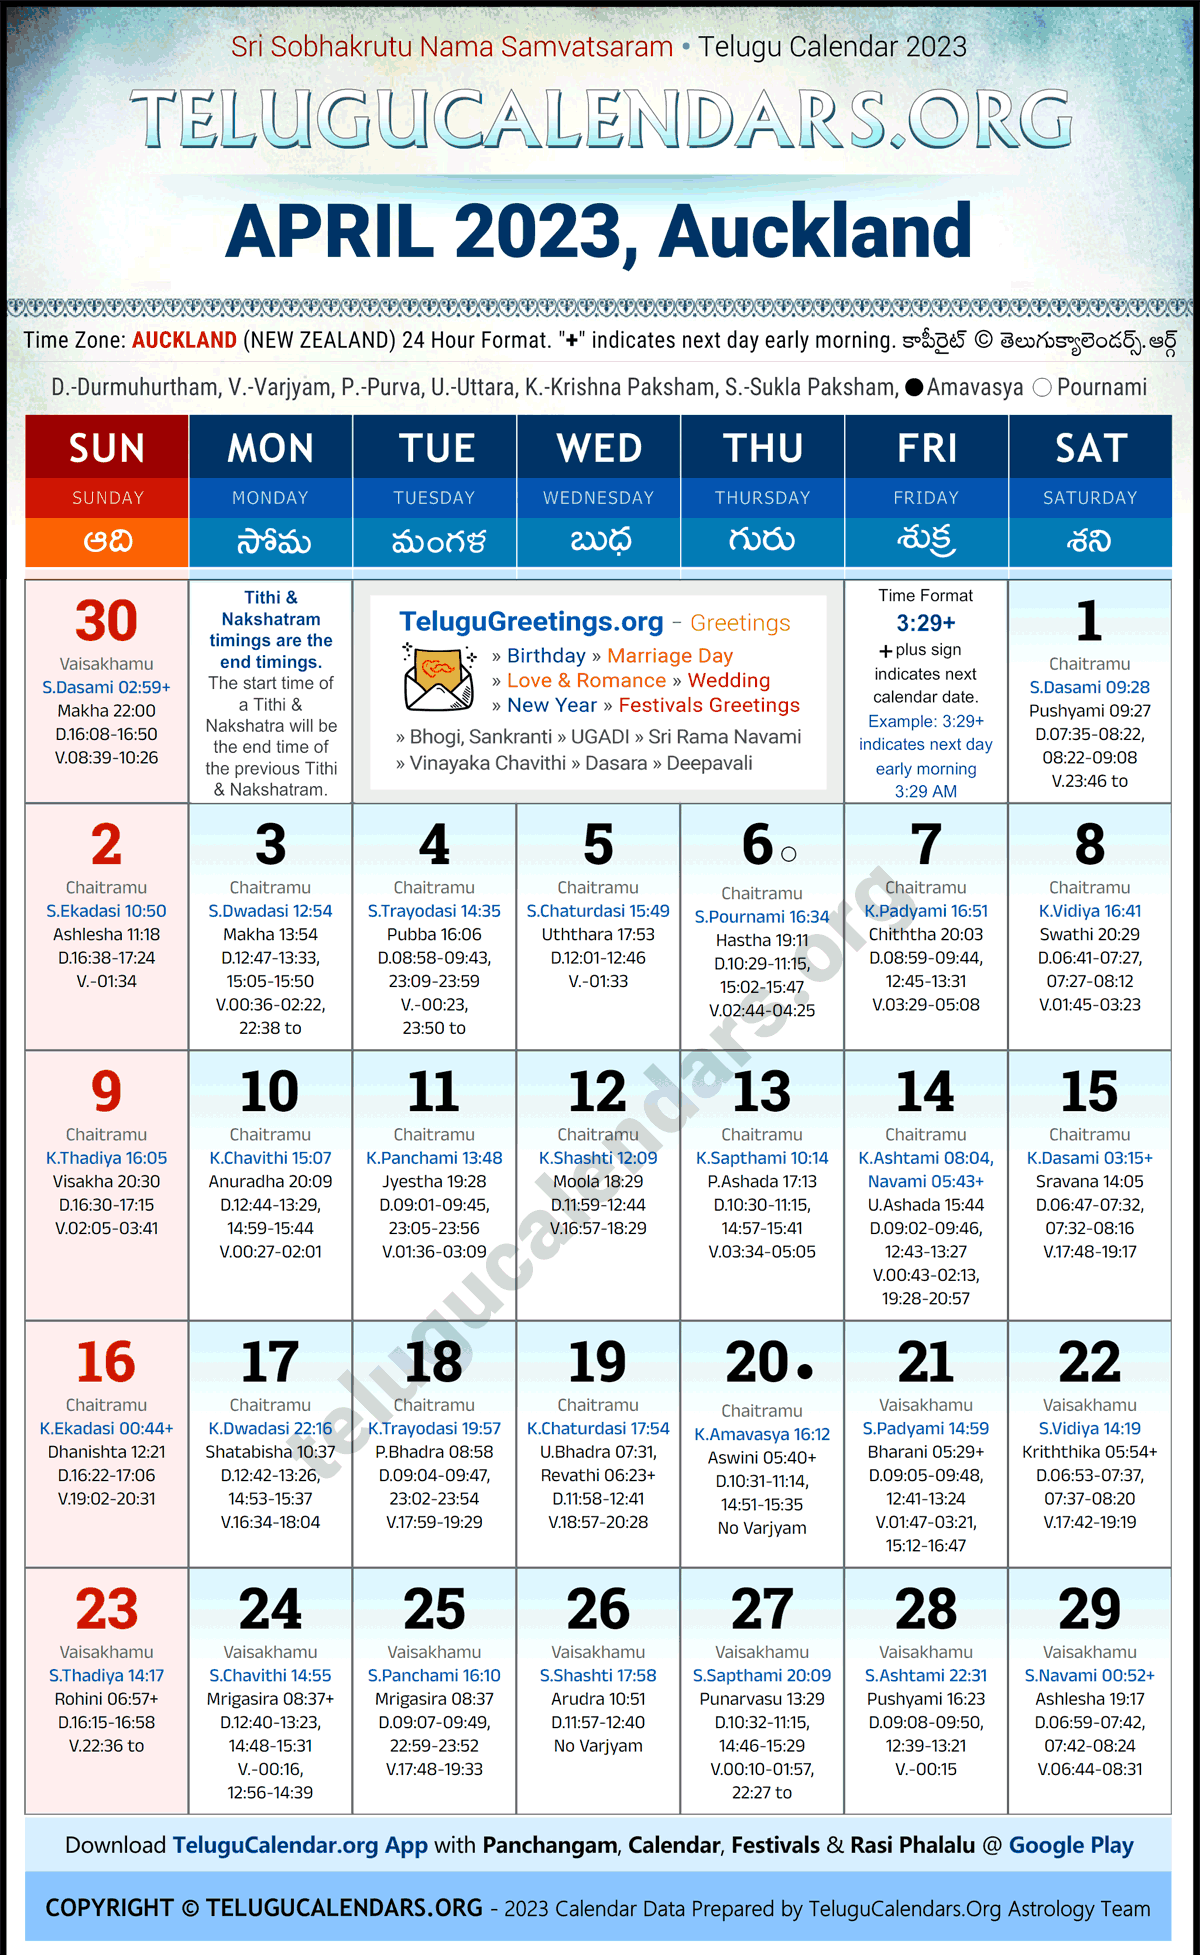 Telugu Calendar 2023 April Festivals for Auckland